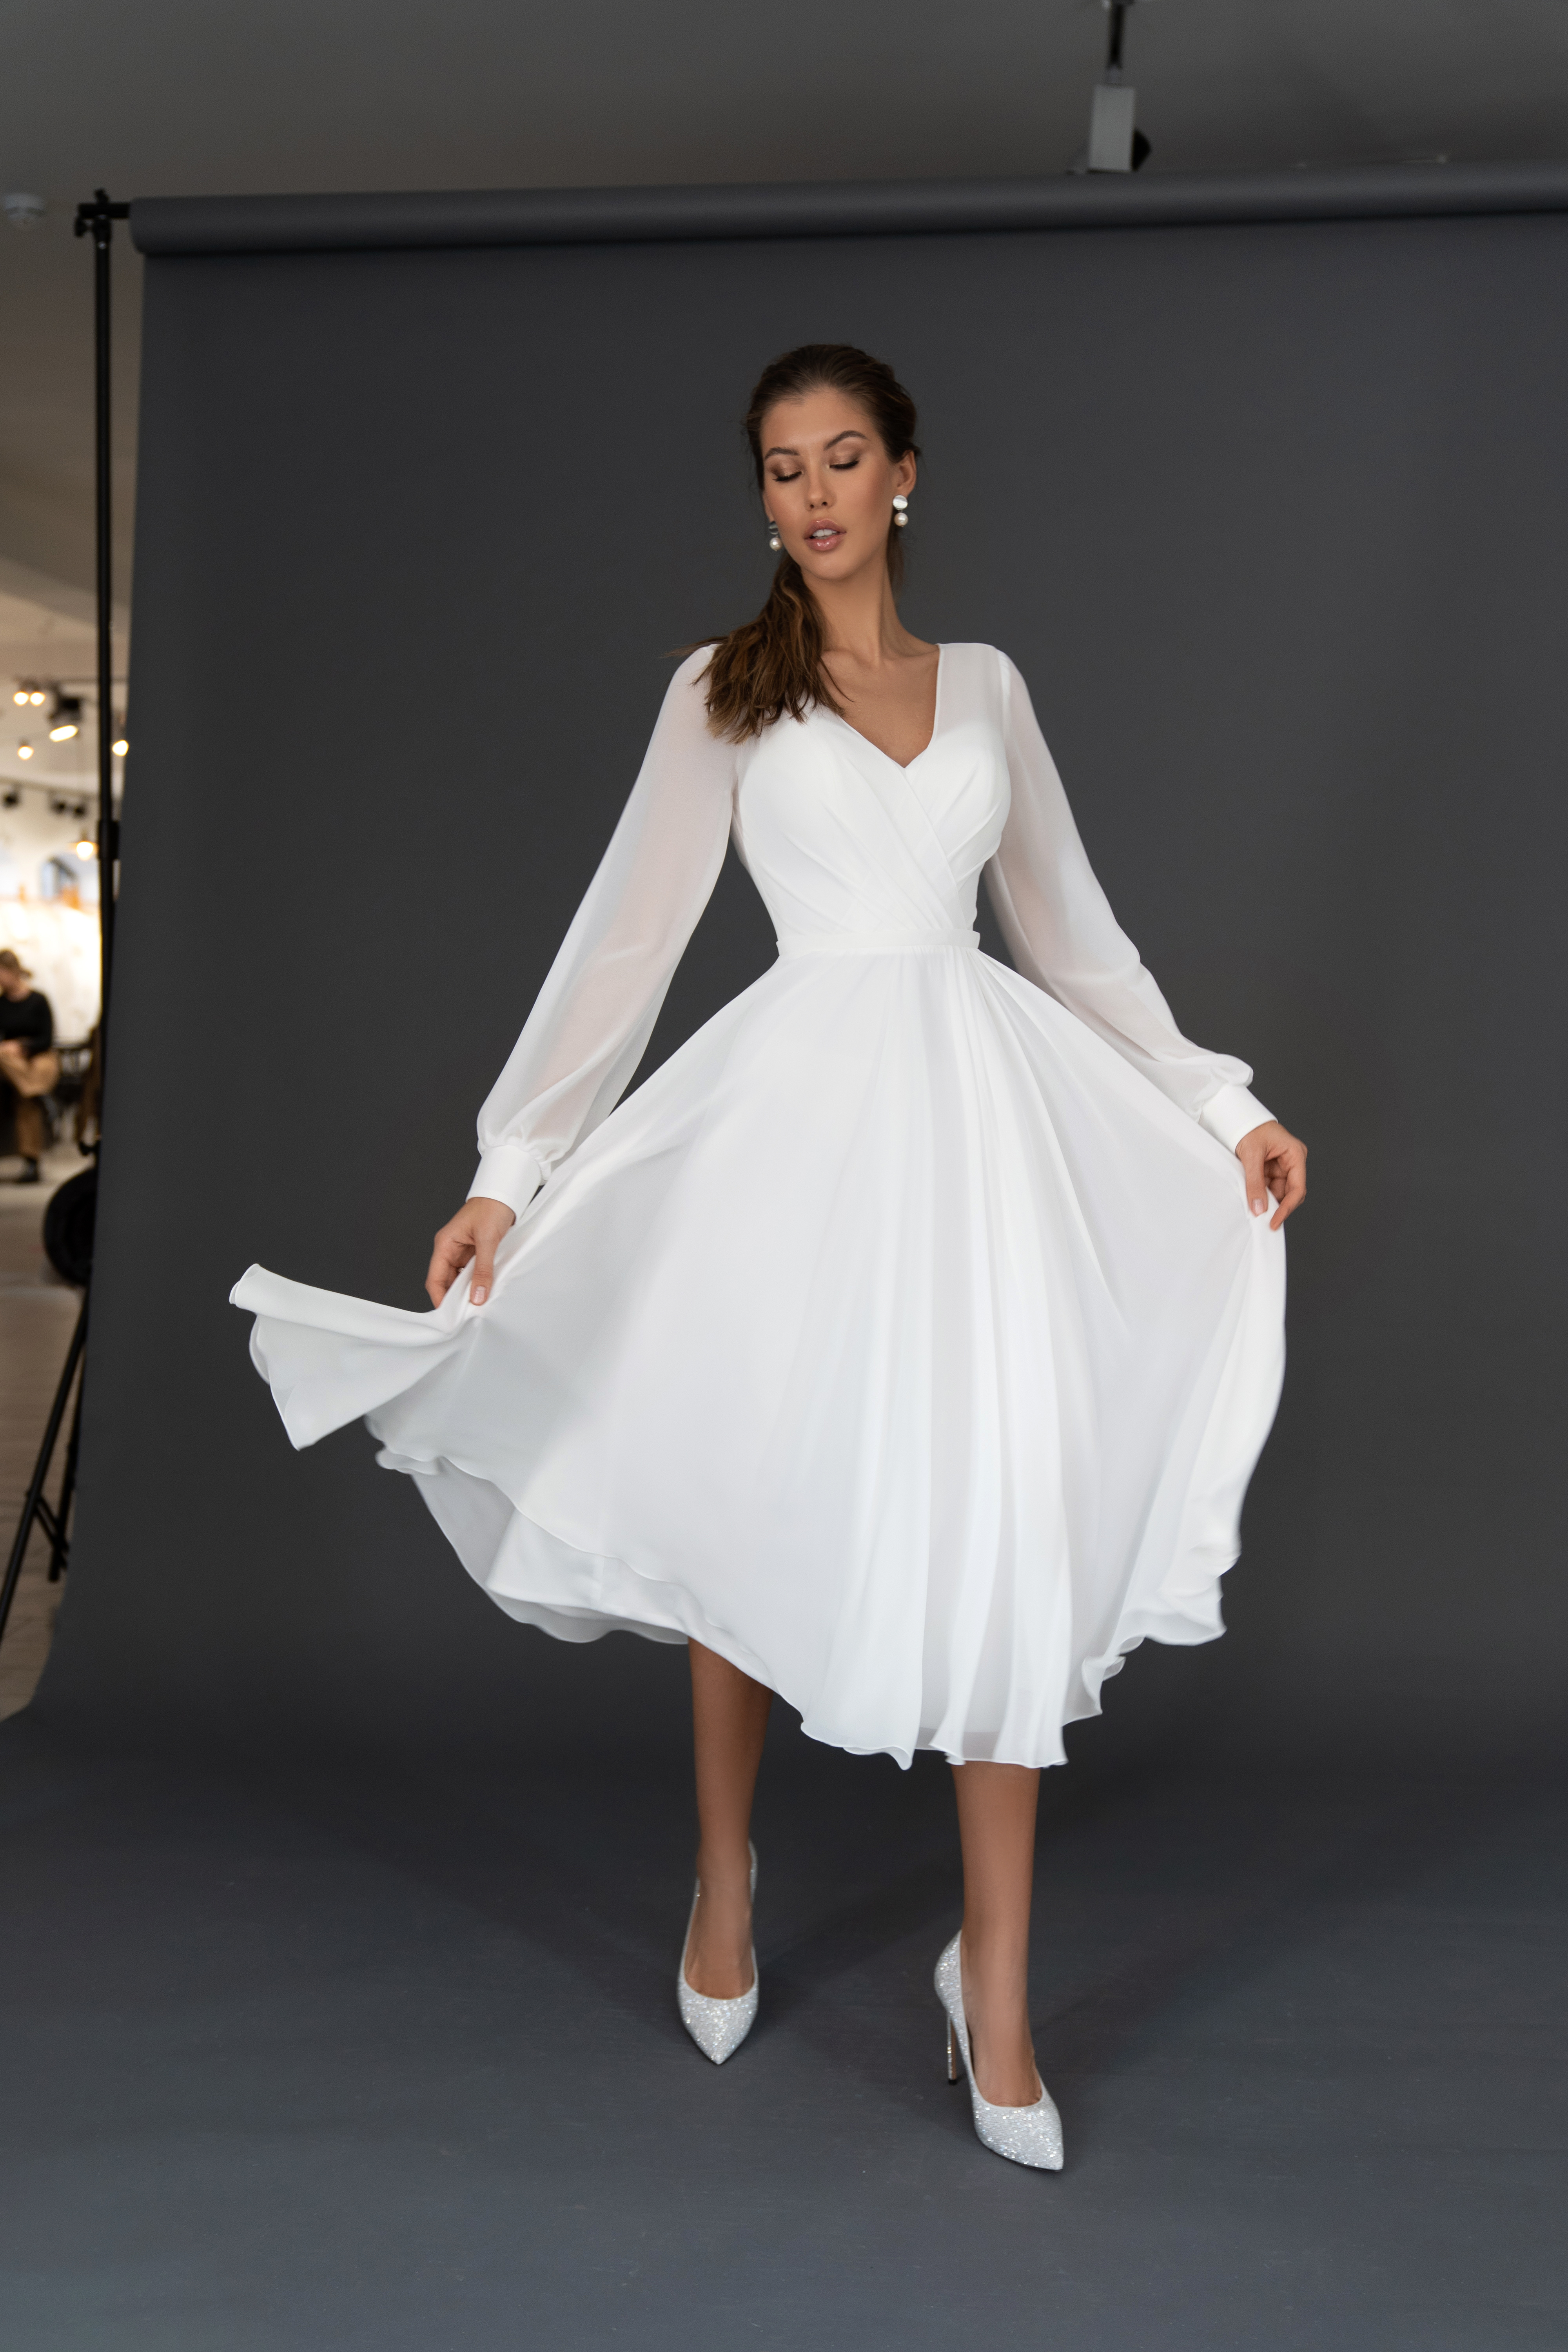 Свадебное платье «Осфадэль миди» Марта — купить в Воронеже платье Осфадэль из коллекции 2021 года